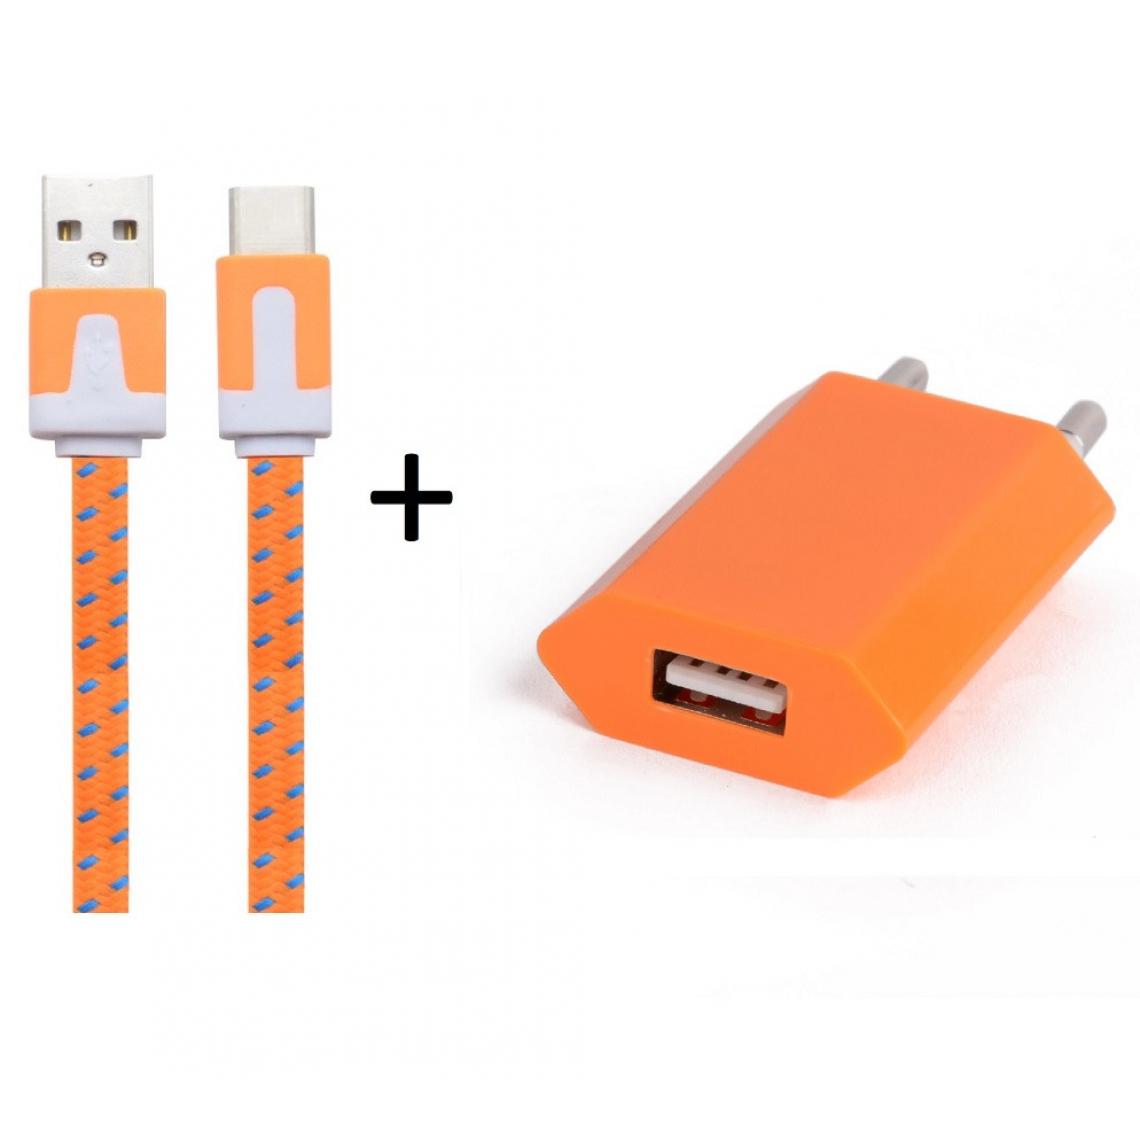 Shot - Pack Chargeur pour OPPO Reno Smartphone Type C (Cable Noodle 1m Chargeur + Prise Secteur USB) Murale Android (ORANGE) - Chargeur secteur téléphone